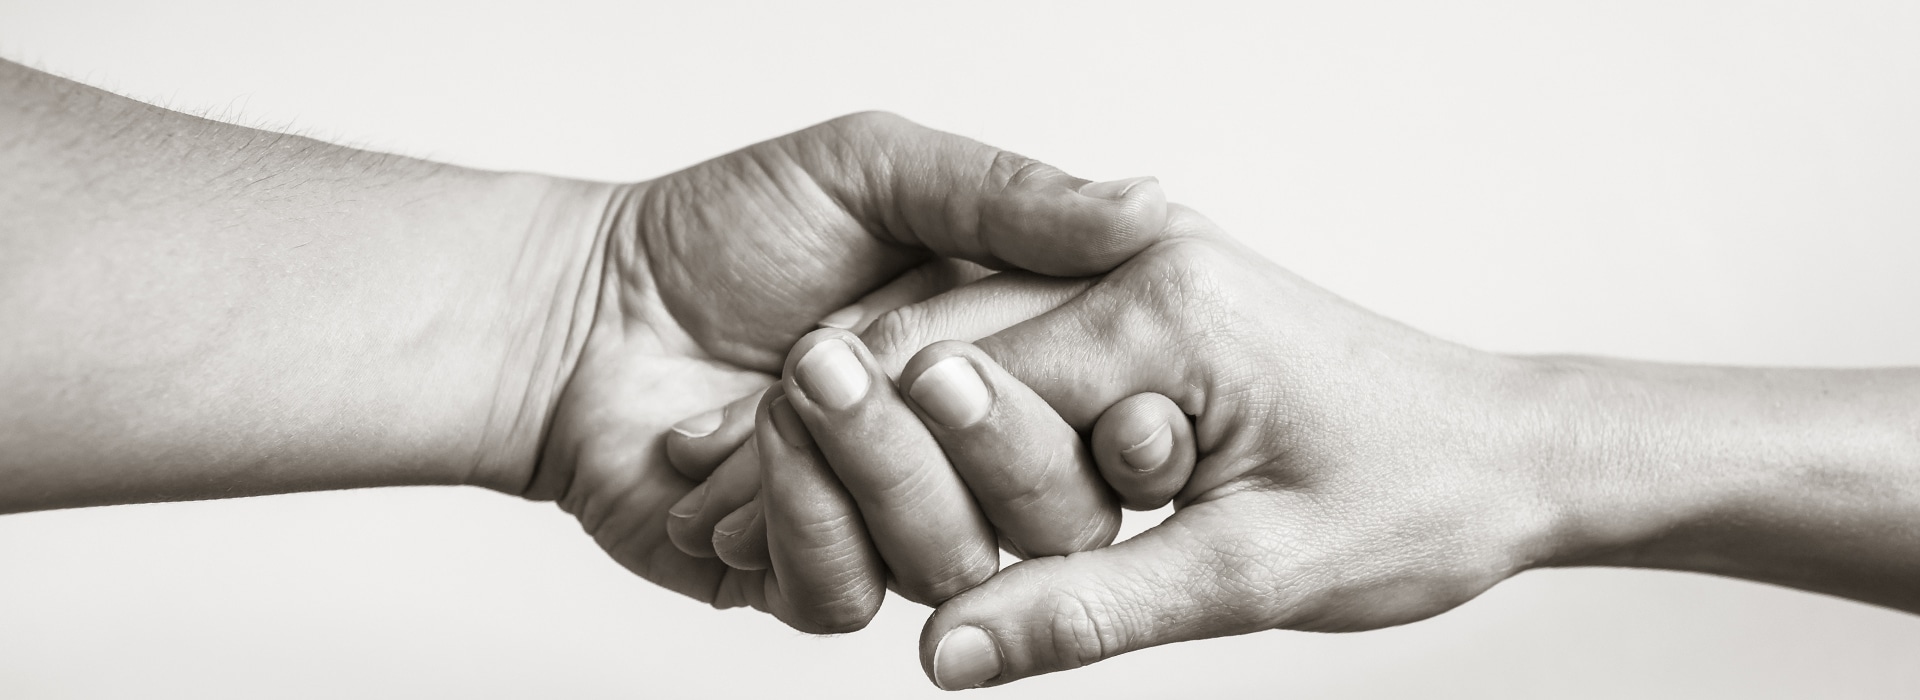 Gemeinsam für Ihre Gesundheit - optimotus Physiotherapie Praxis Freiburg - Eine Hand reicht der anderen Hand zur Hilfe